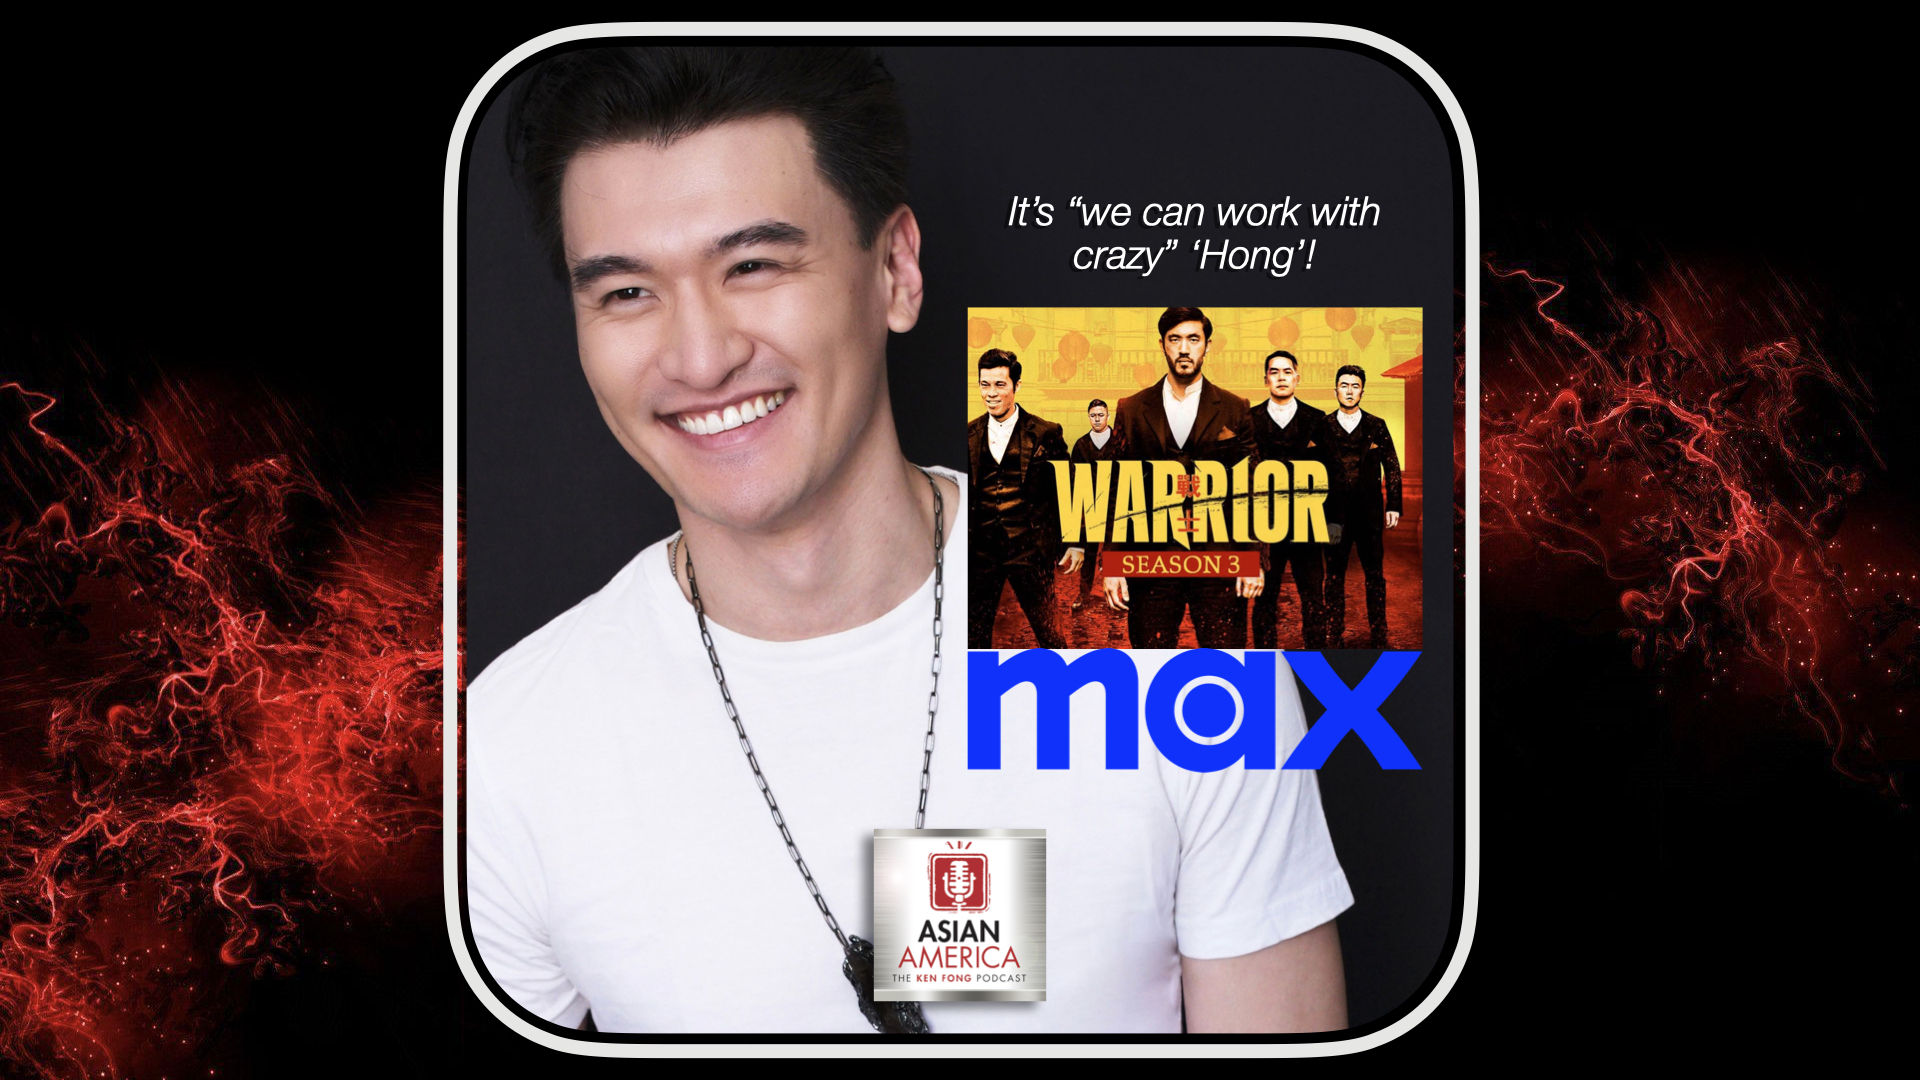 Ep 433: Chen Tang On Season 3 of “Warrior”